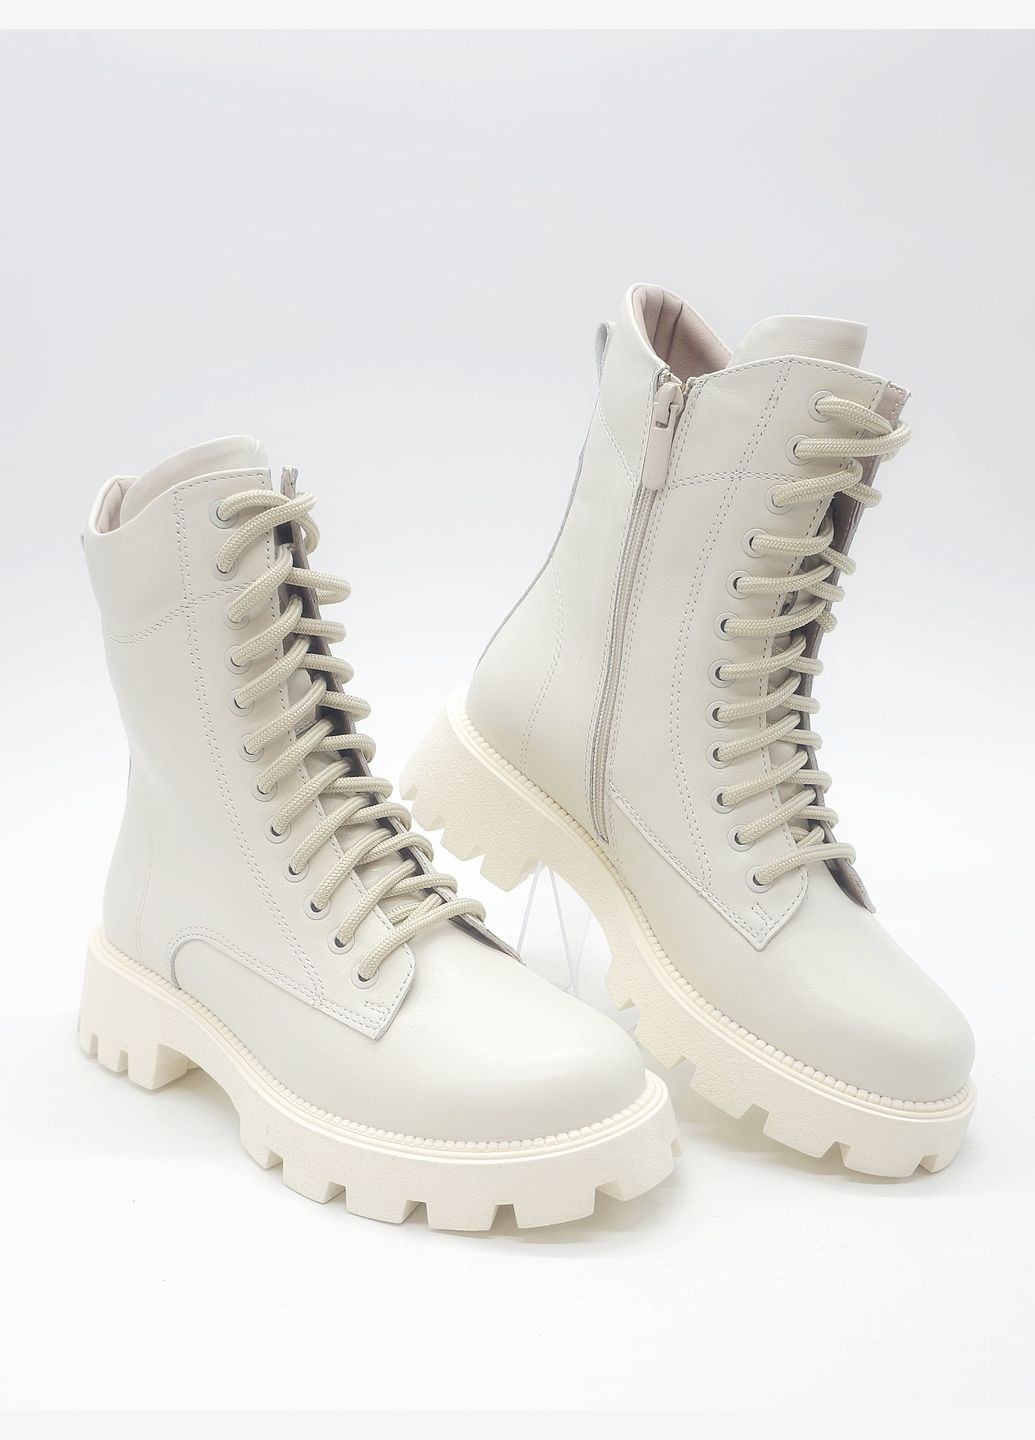 Осенние женские ботинки зимние молочные кожаные k-17-2 23 см (р) Kento